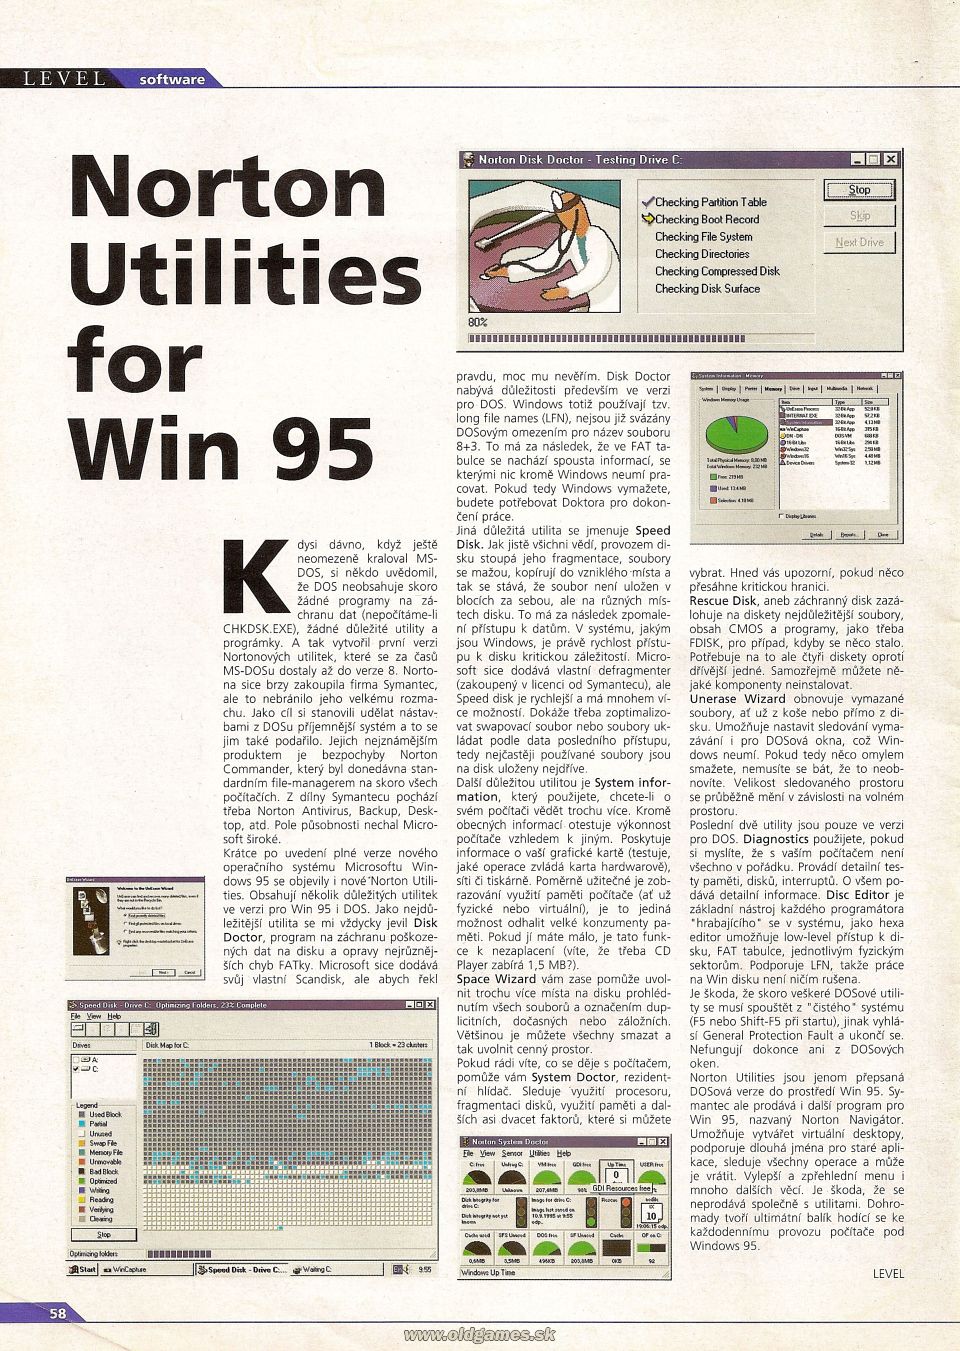 Norton Utilities for Win 95